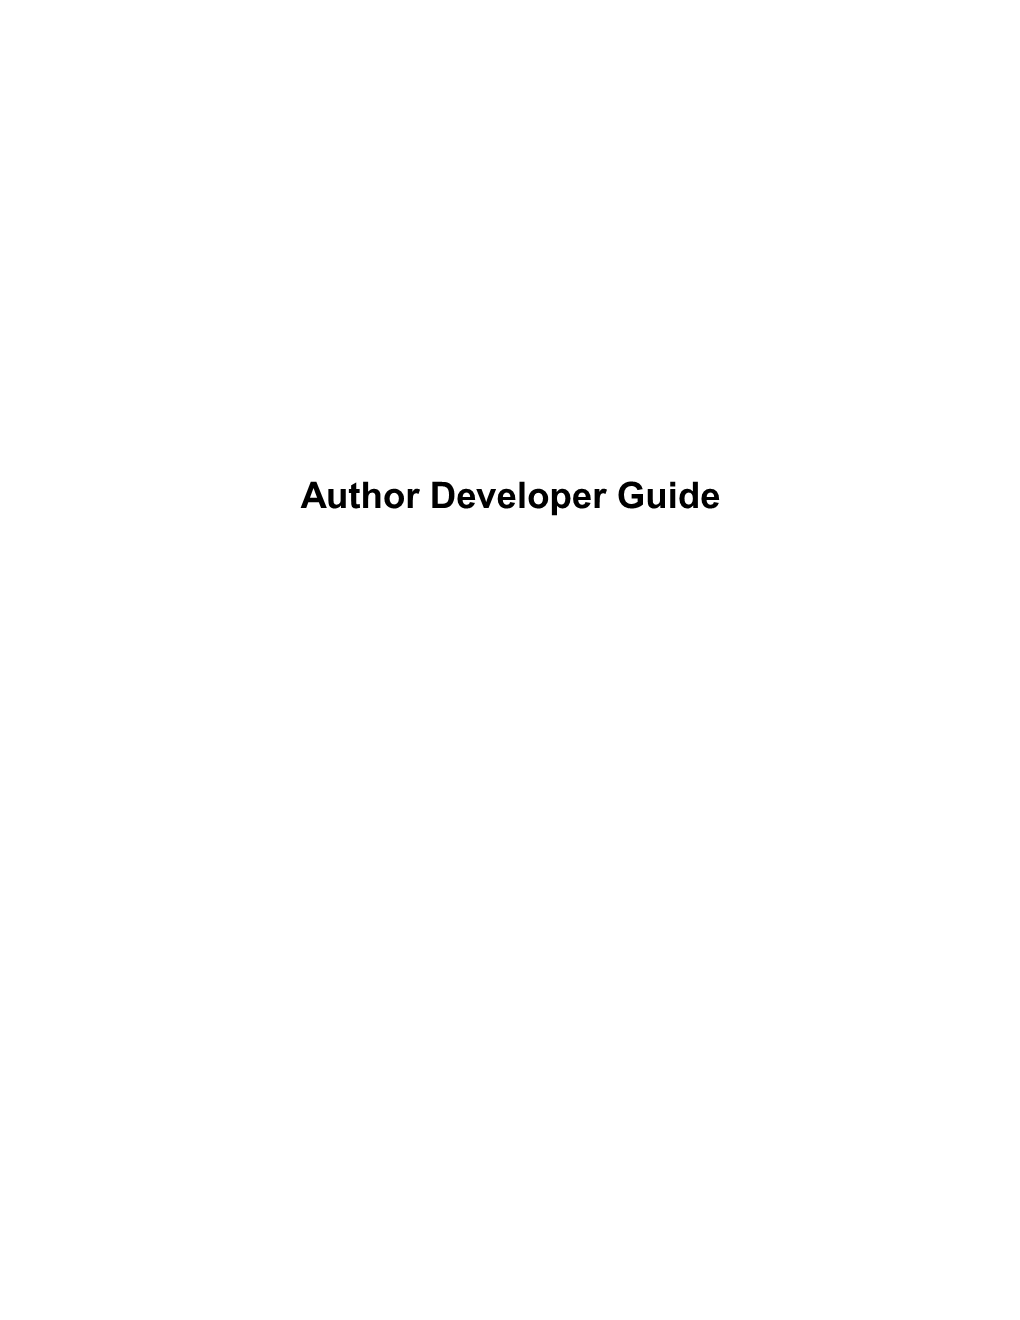 Author Developer Guide | Contents | 2 Contents